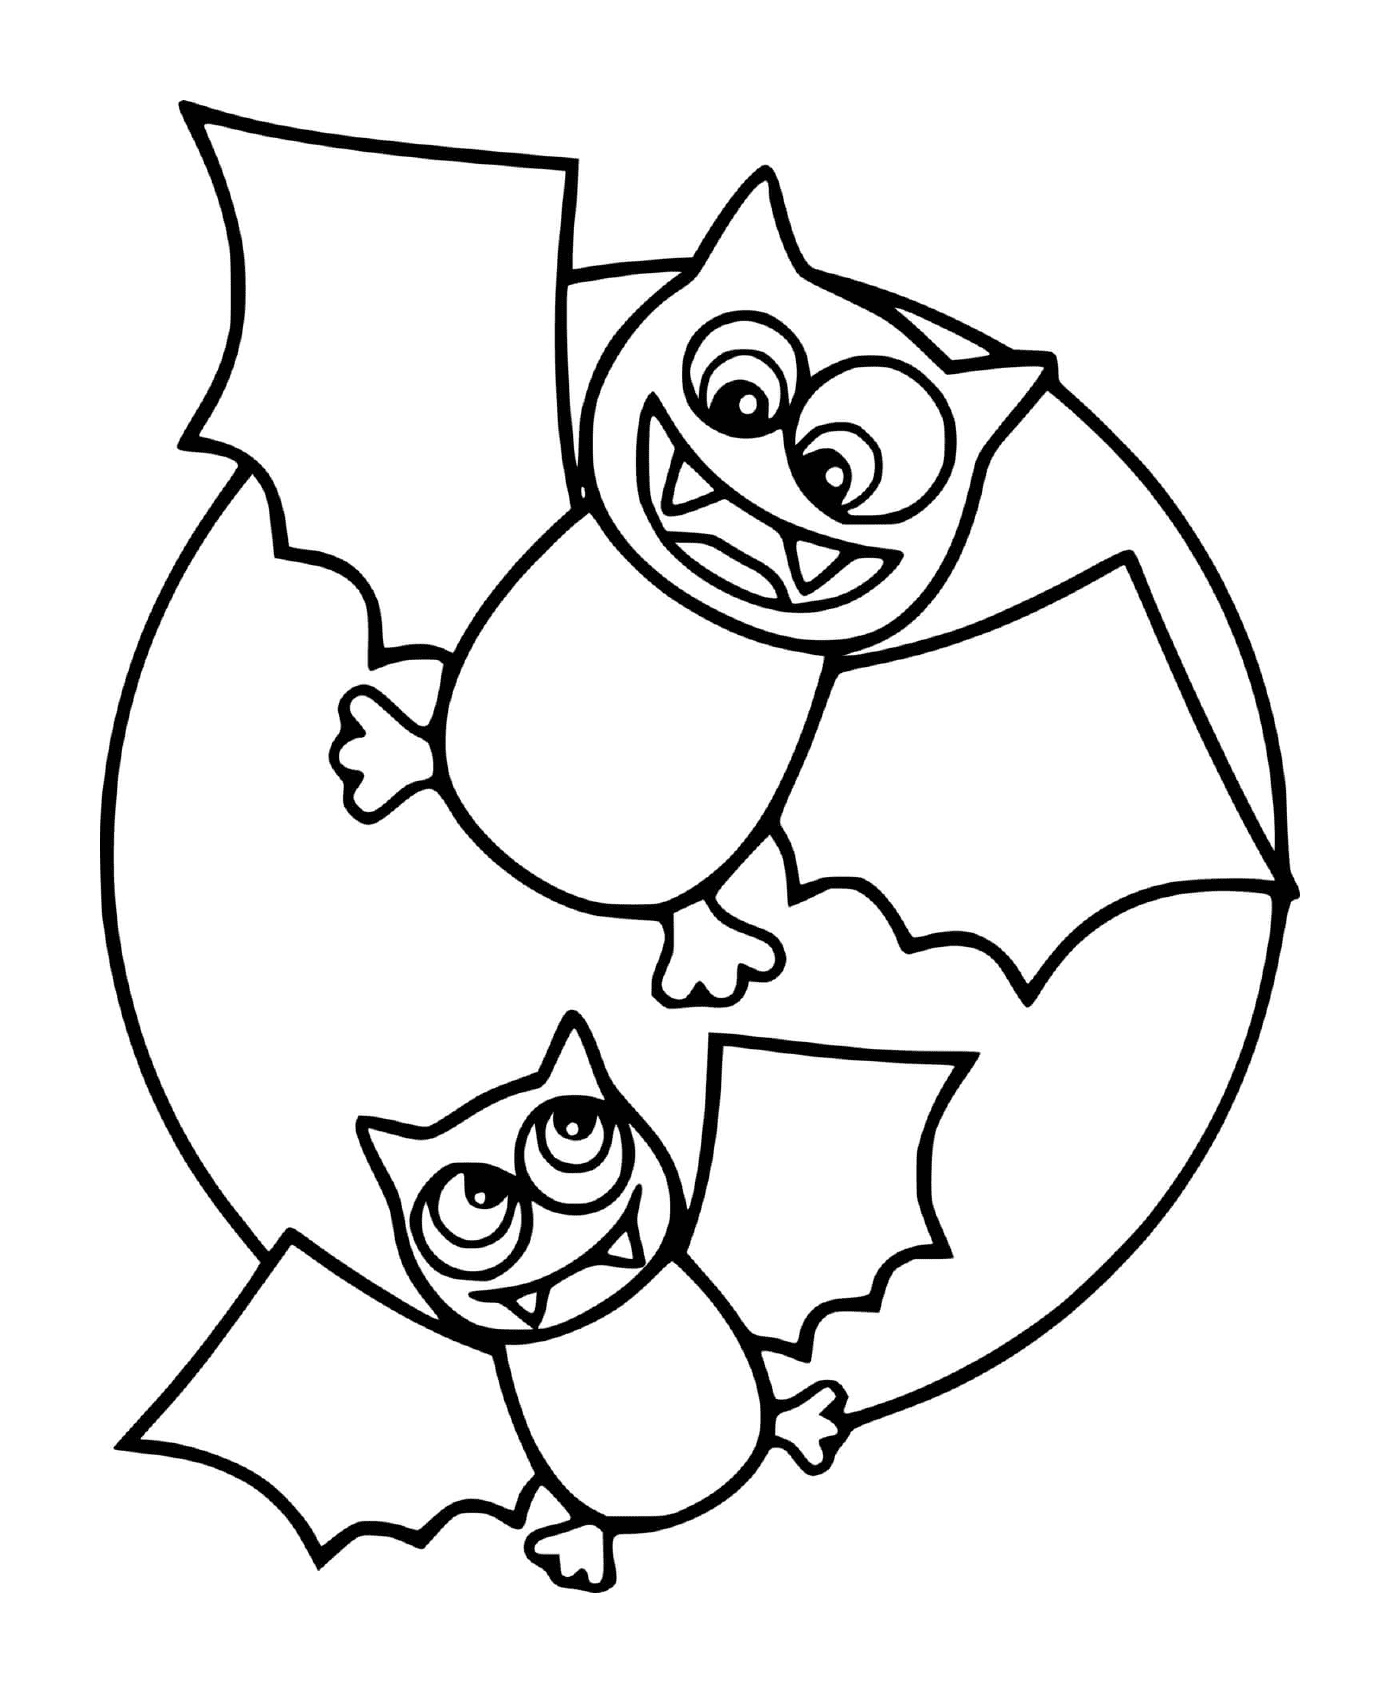  Dos murciélagos en versión de dibujos animados con la luna 